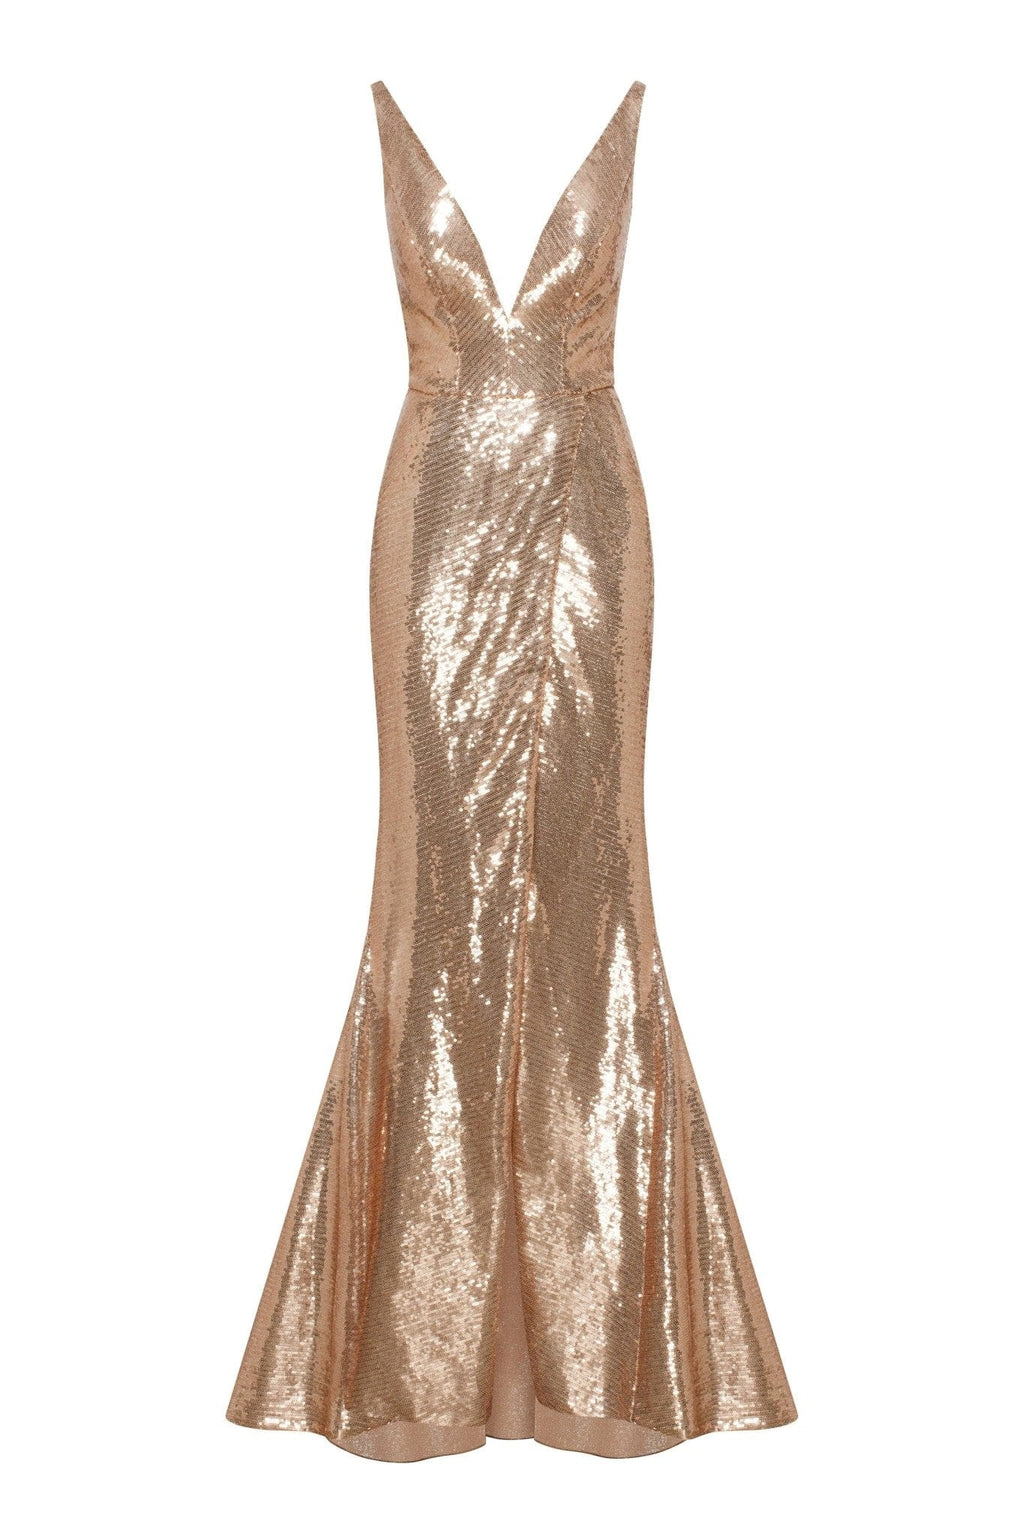 Gold Sequin Dress - Bustier Dress - Strapless Sequin Dress - Lulus